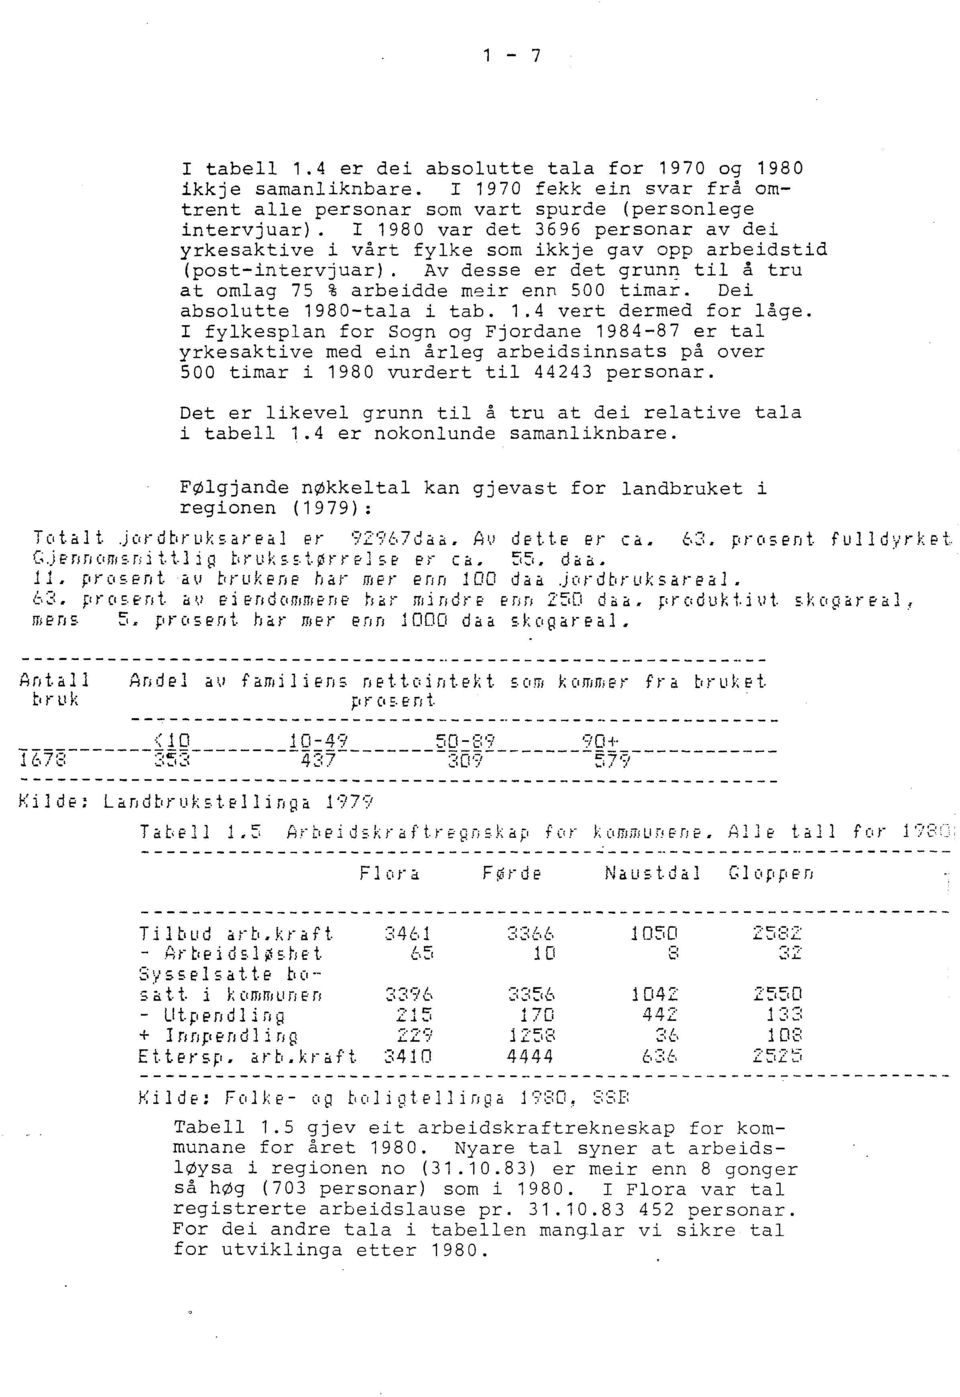 Dei absolutte 1980-tala i tab. 1.4 vert dermed for låge. r fylkesplan for Sogn og Fjordane 1984-87 er tal yrkesaktive med ein årleg arbeidsinnsats på over 500 timar i 1980 vurdert til 44243 personar.